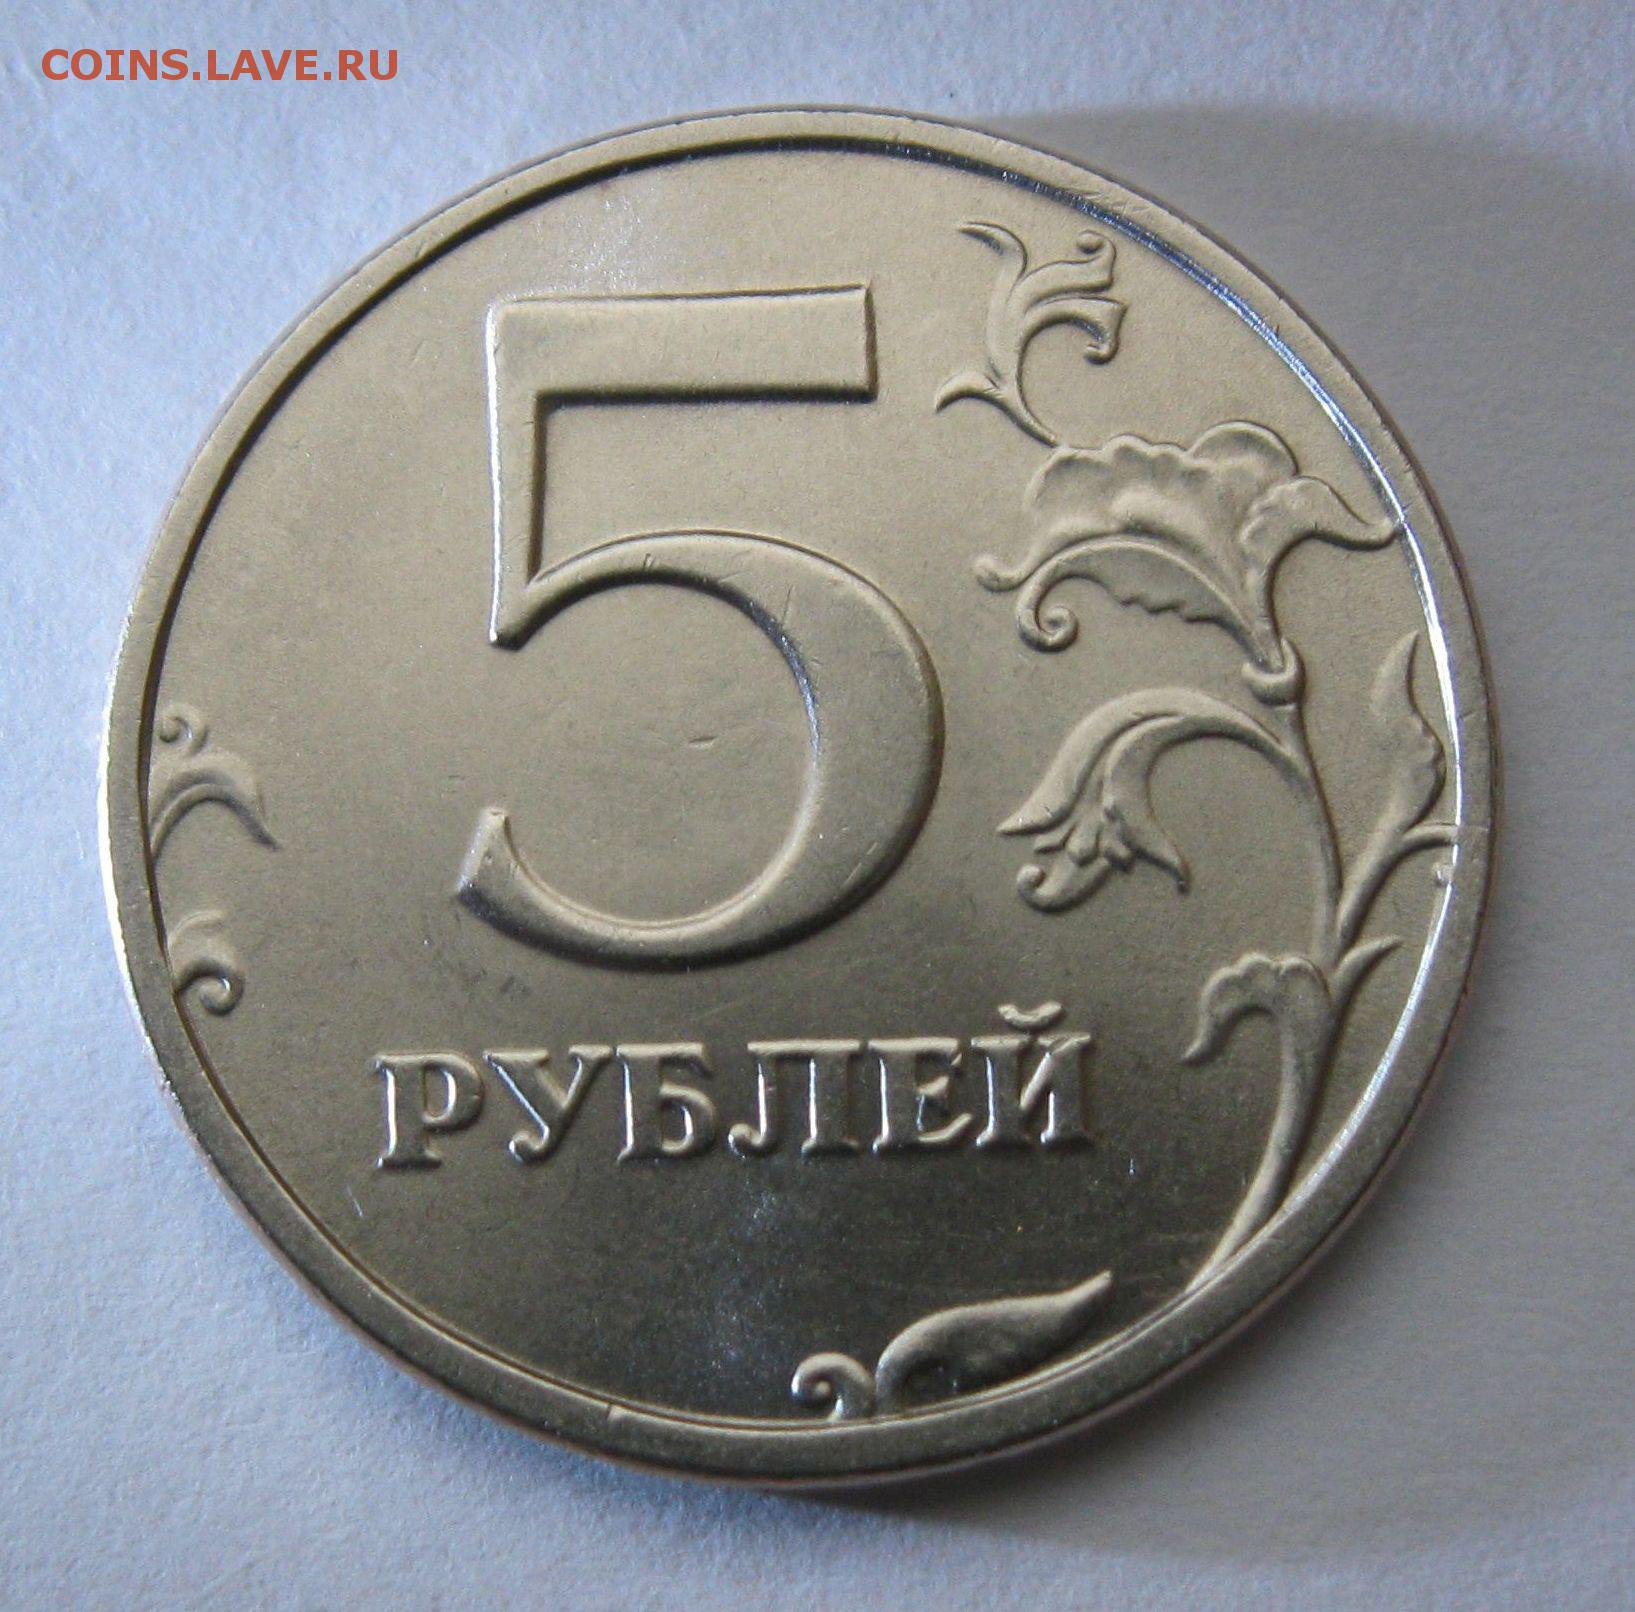 Коллекционные 5 рублей. Коллекционные 5 рублей 1998 года как должны выглядеть.